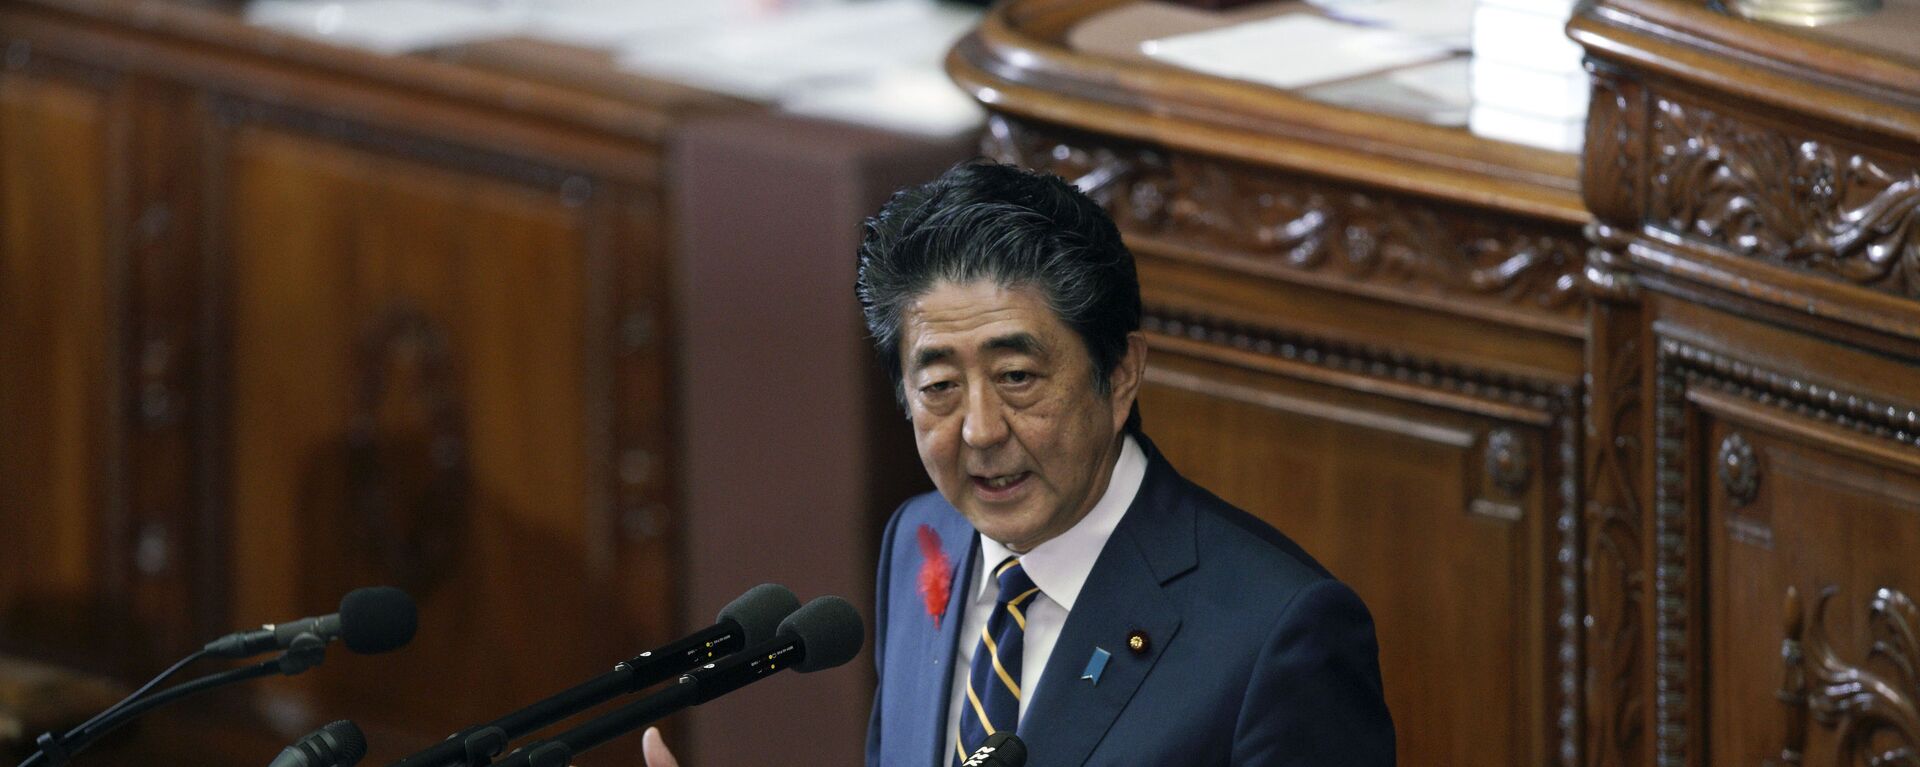 Shinzo Abe, ex primer ministro de Japón - Sputnik Mundo, 1920, 02.12.2021